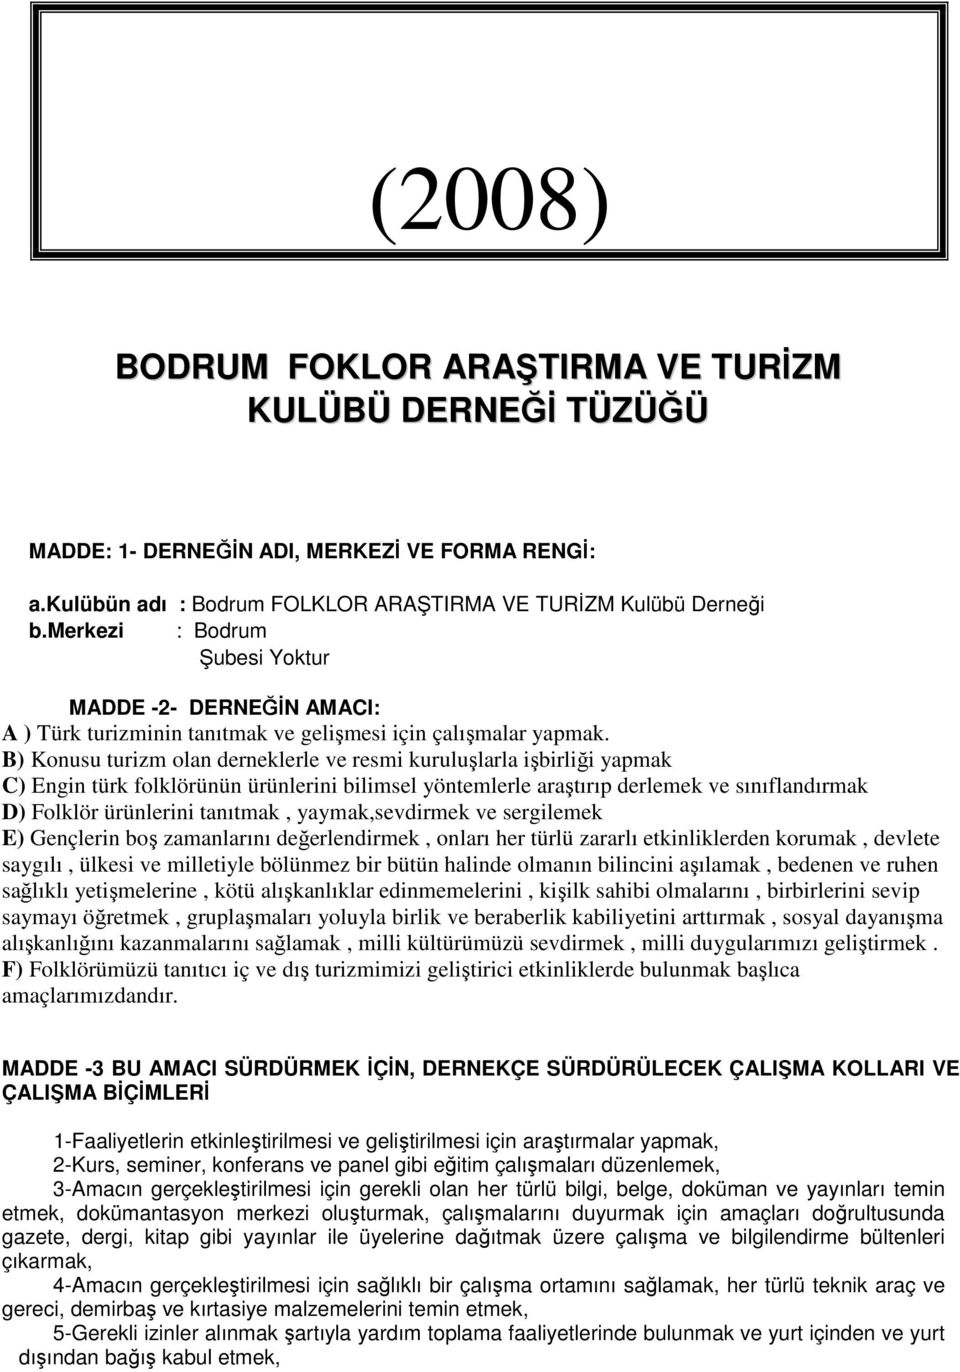 B) Konusu turizm olan derneklerle ve resmi kuruluşlarla işbirliği yapmak C) Engin türk folklörünün ürünlerini bilimsel yöntemlerle araştırıp derlemek ve sınıflandırmak D) Folklör ürünlerini tanıtmak,